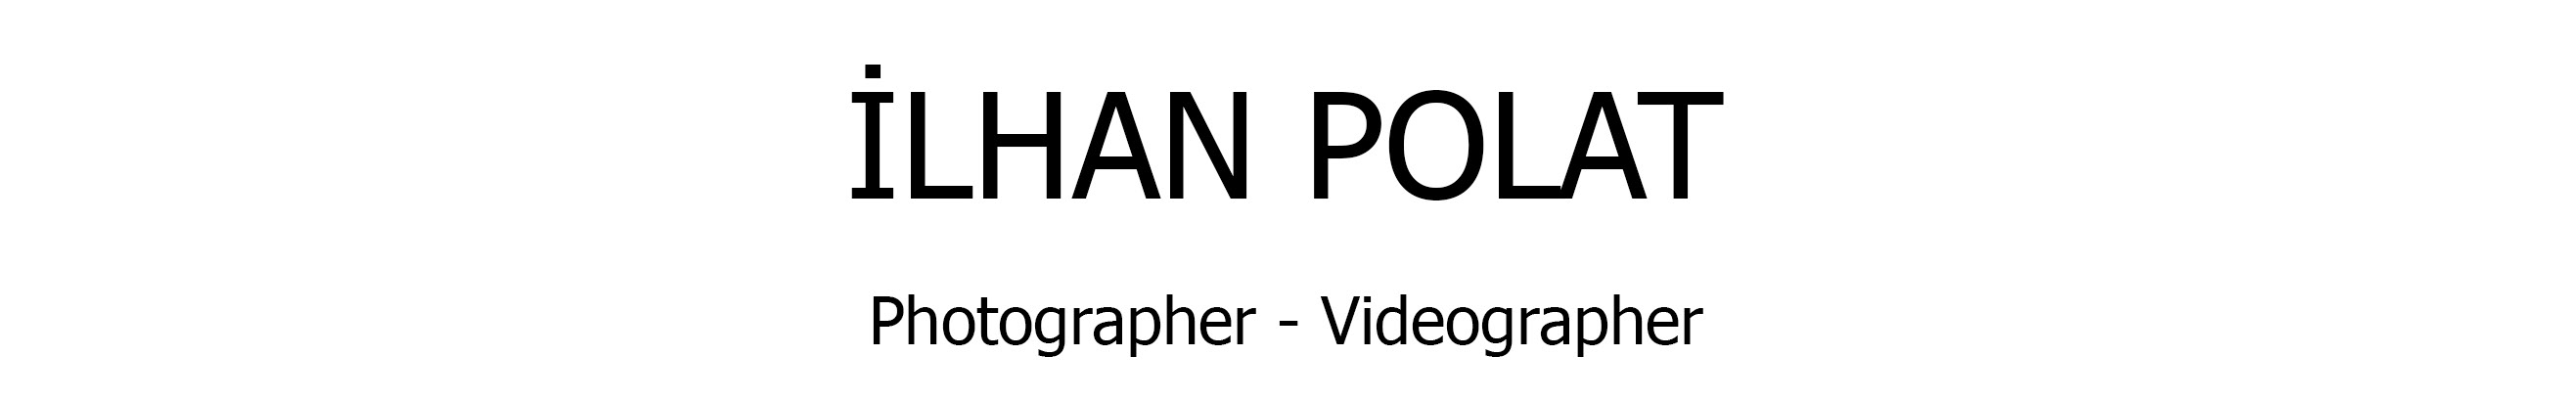 Banner de perfil de ilhan Polat